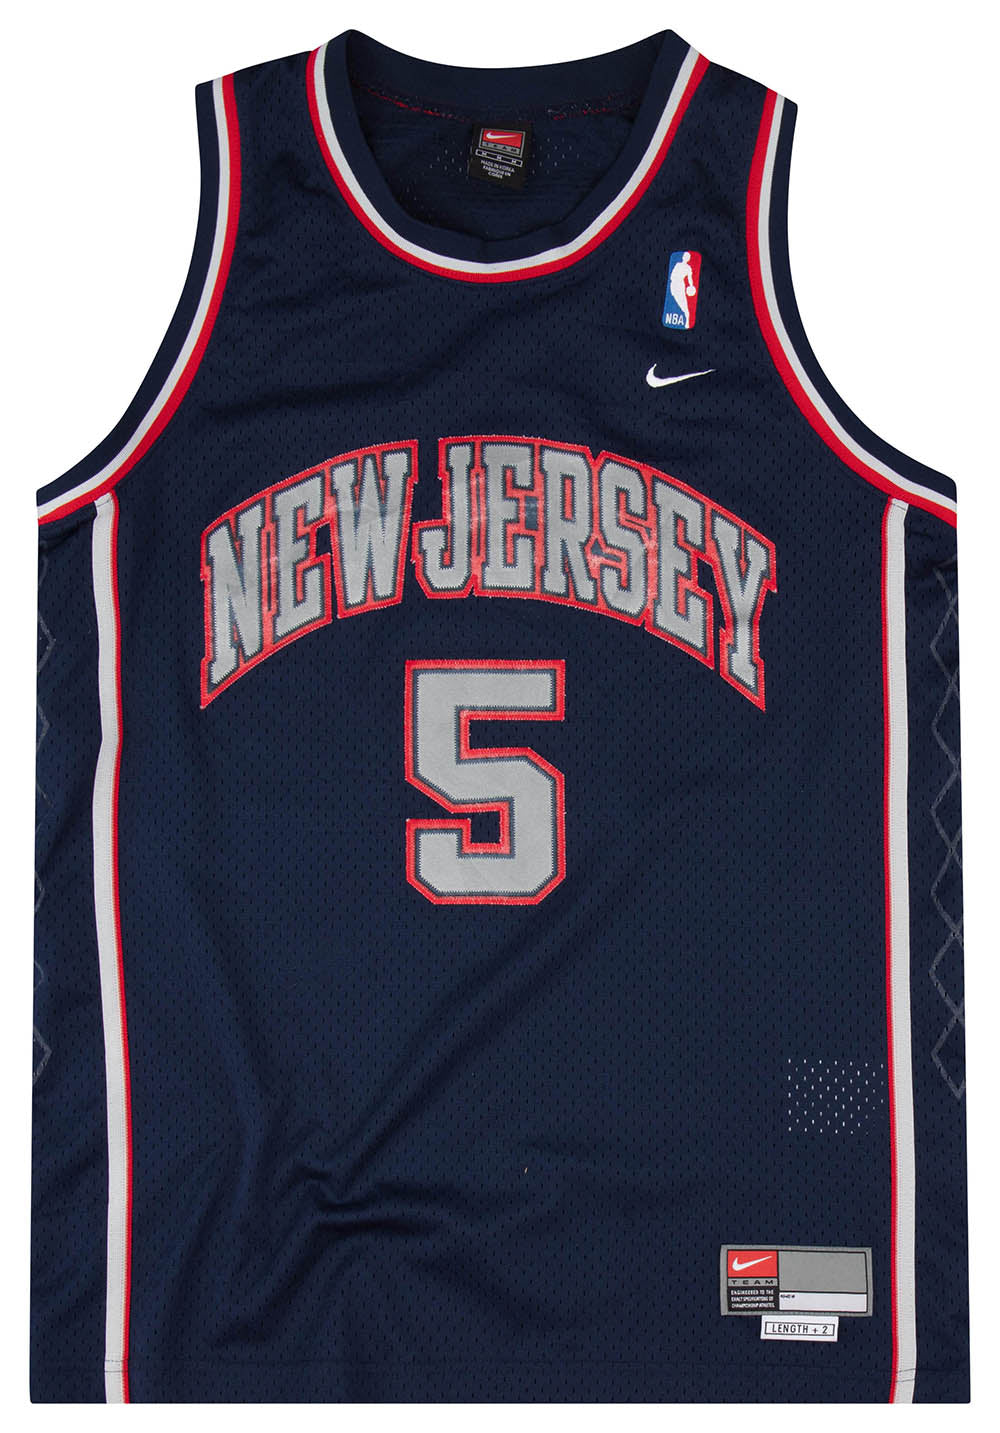 USED KIDS NIKE TEAM New Jersey Nets #5 Jason Kidd Jersey Youth Small Grey